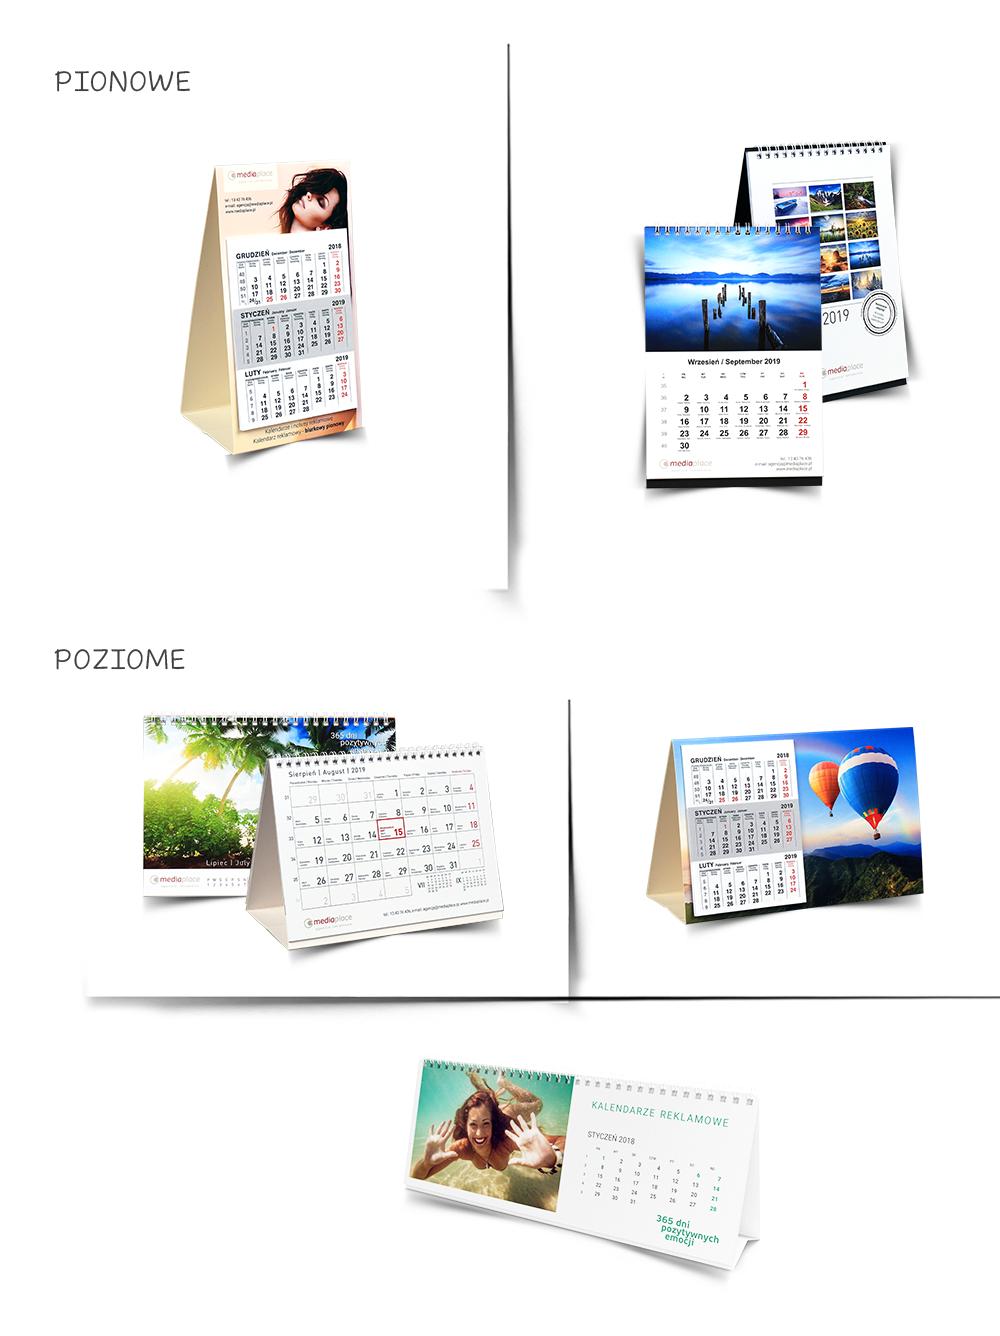 Kalendarze z indywidualnym projektem